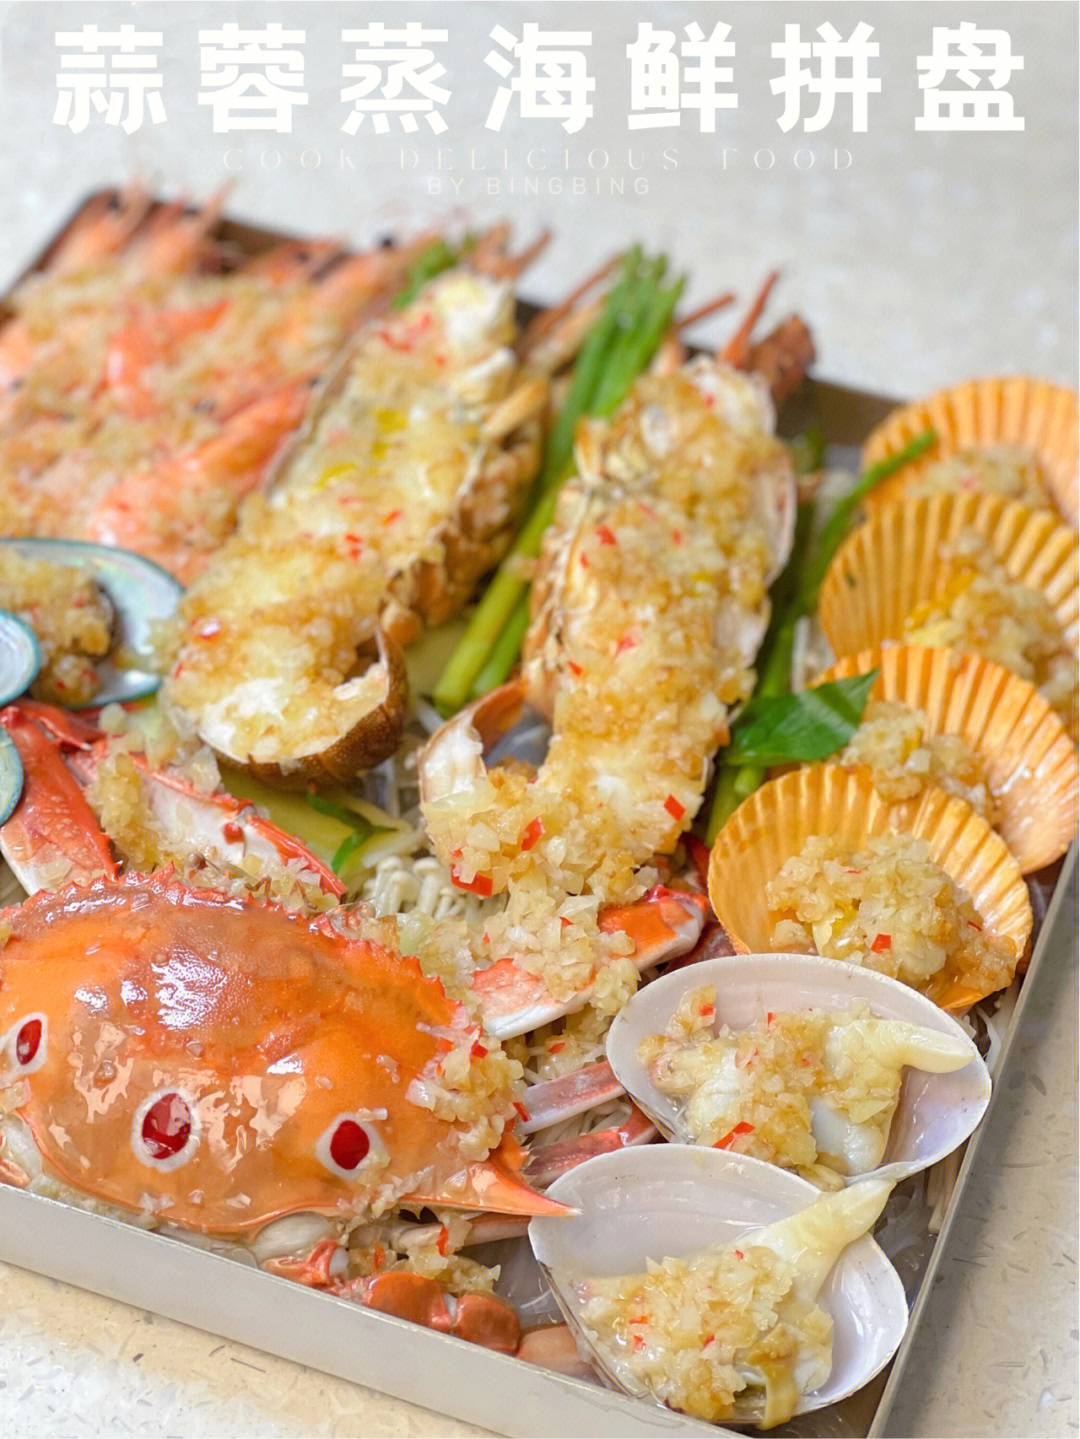 大餐呢来个周末海鲜大集会吧食材:小青龙,螃蟹(三目蛴),虾,扇贝,红蛋